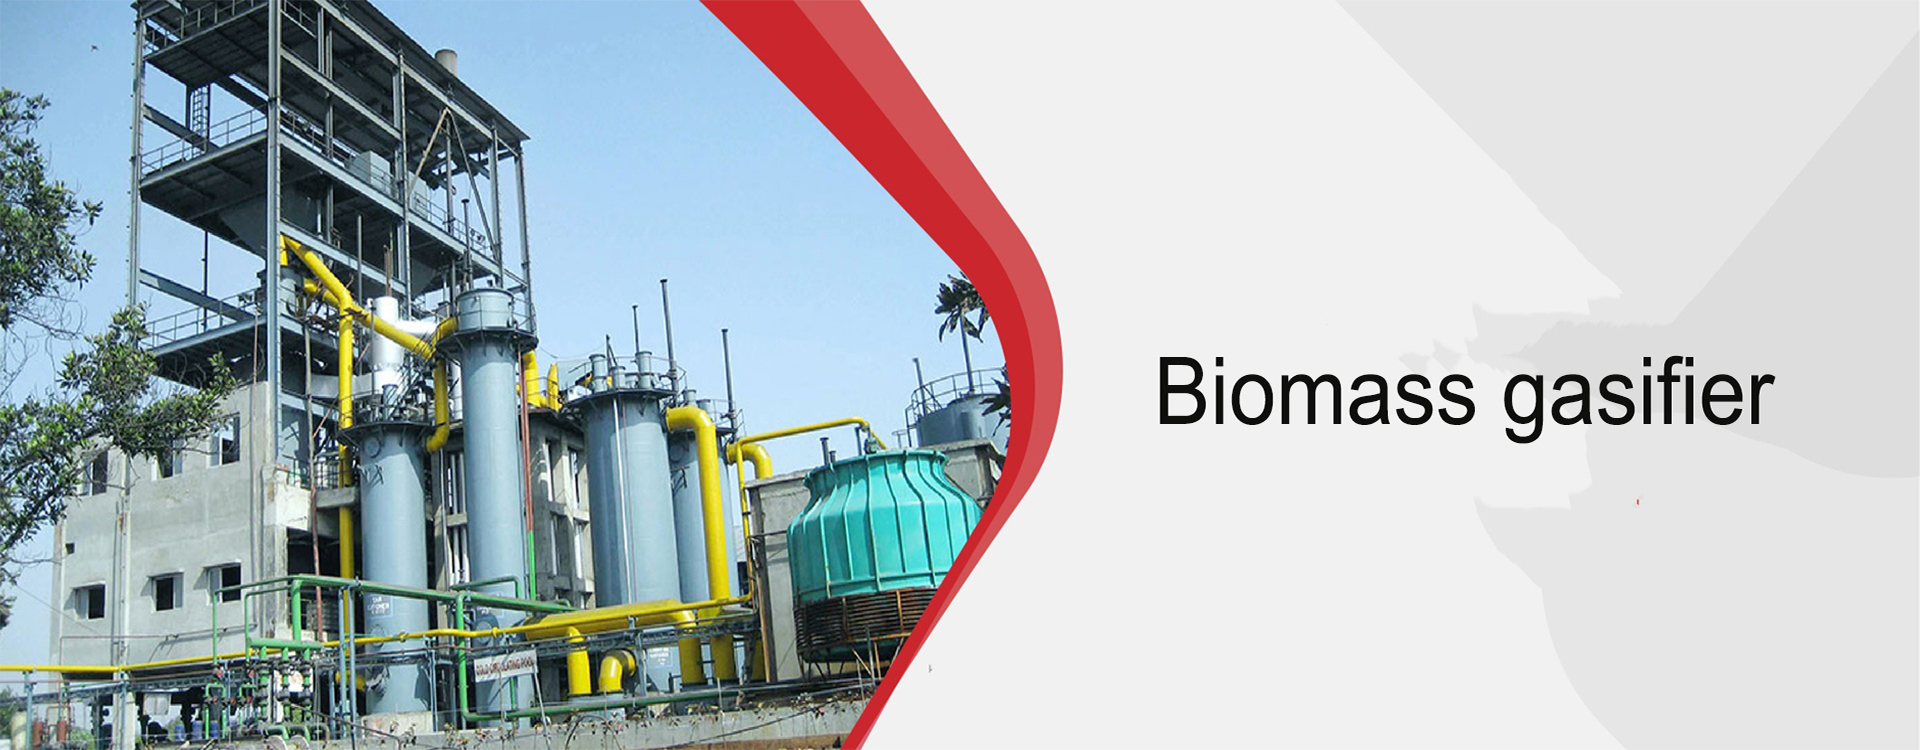 Biomass gasifier